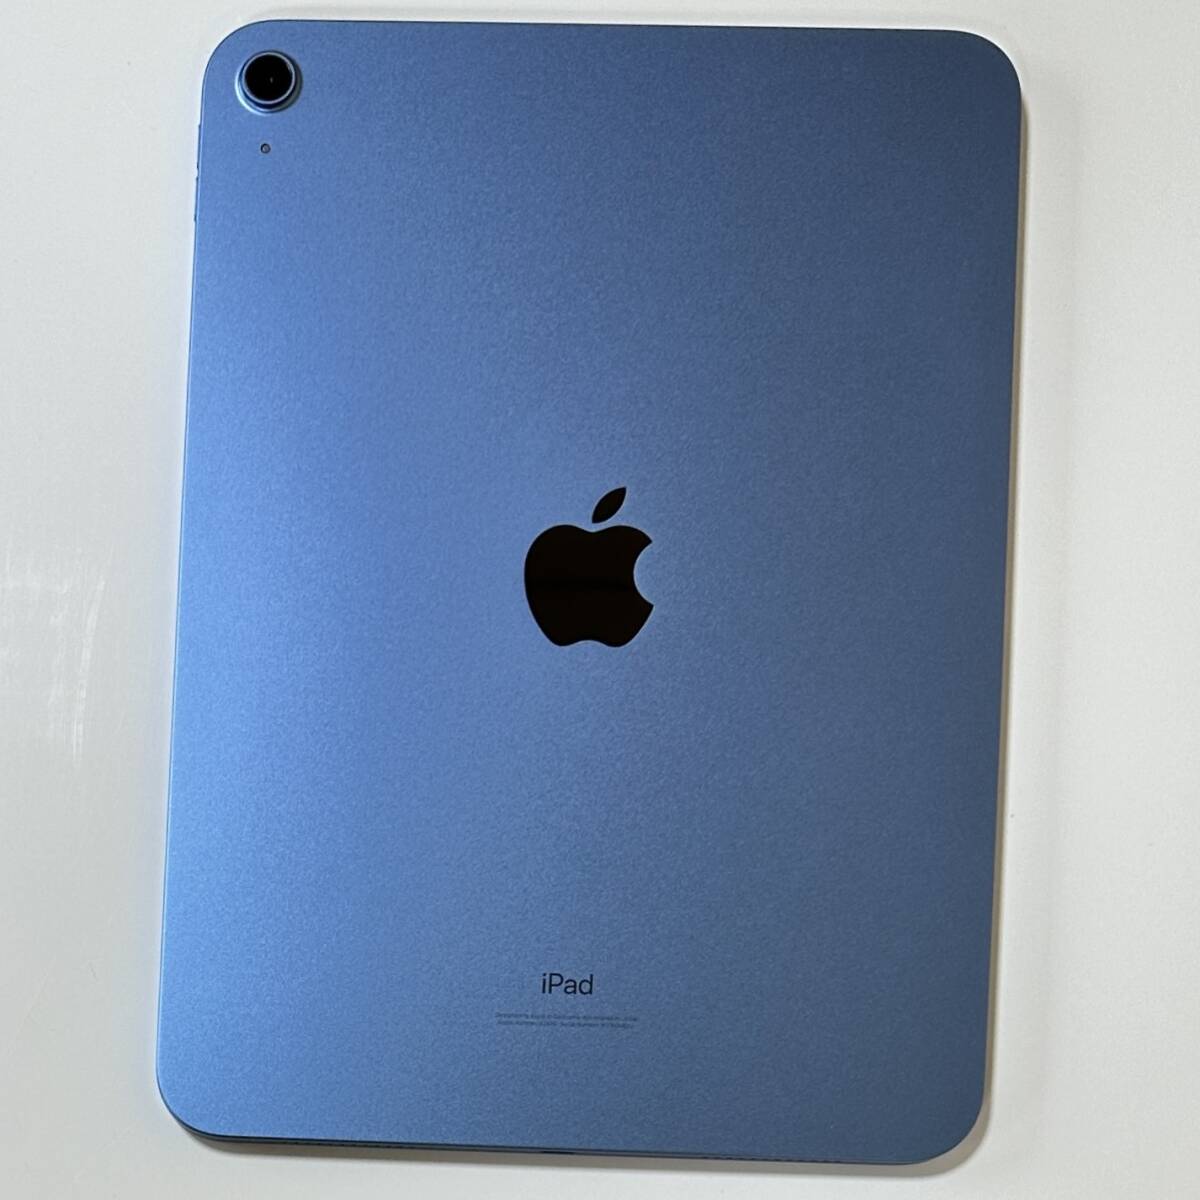 ( превосходный товар ) Apple iPad ( no. 10 поколение ) голубой 64GB MPQ13J/A Wi-Fi модель iOS17.5 Acty беж .n разблокирован 